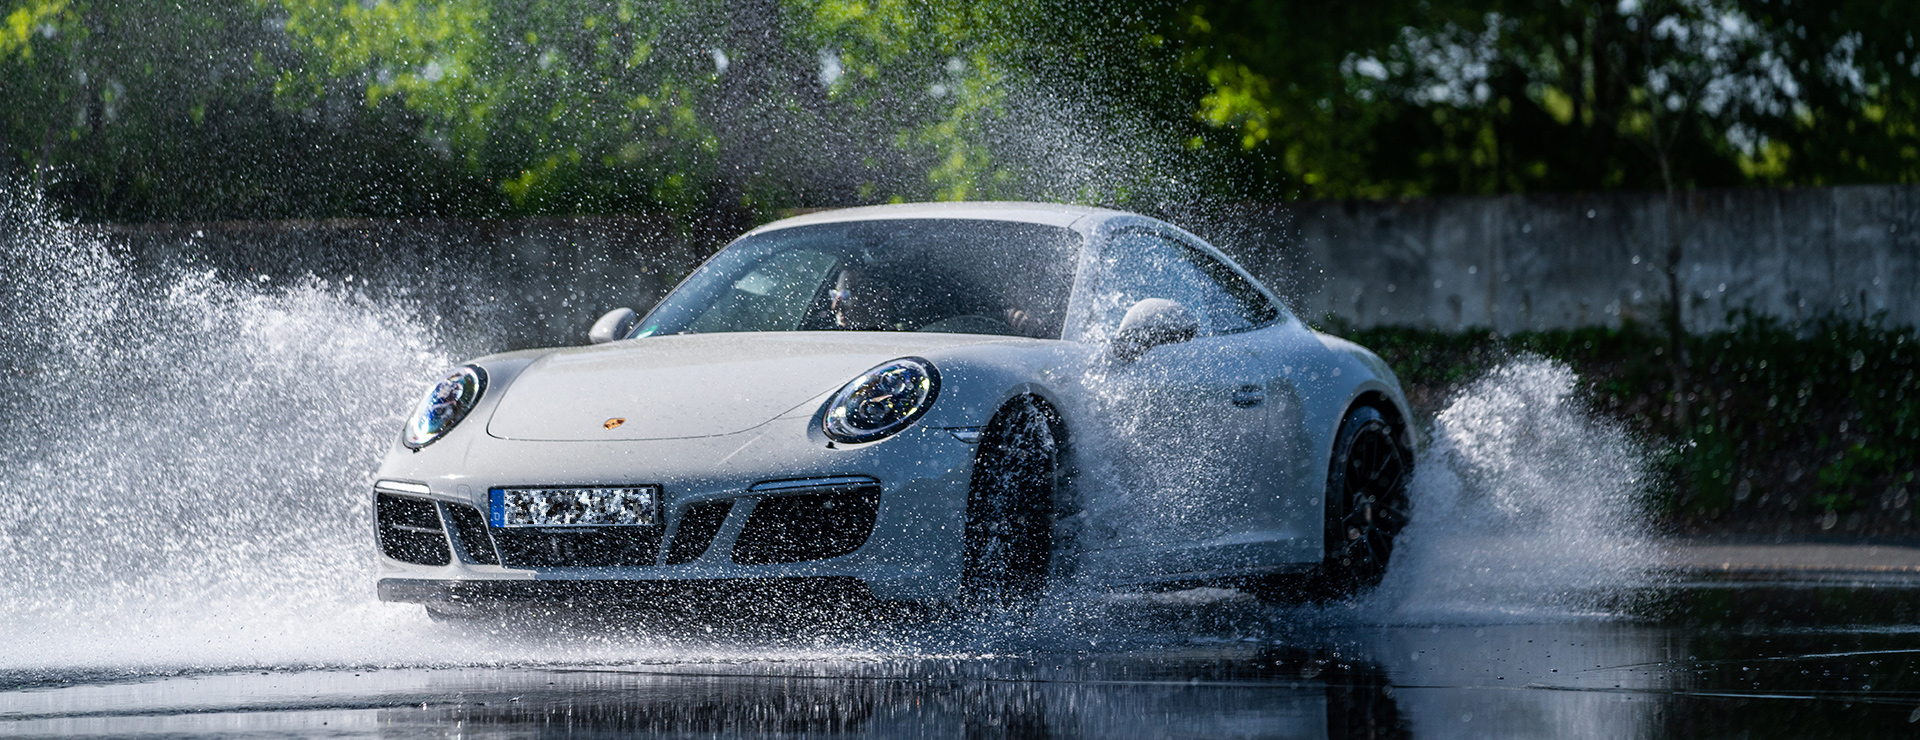 Ein Porsche Sportwagen fährt auf einer nassen Strecke.